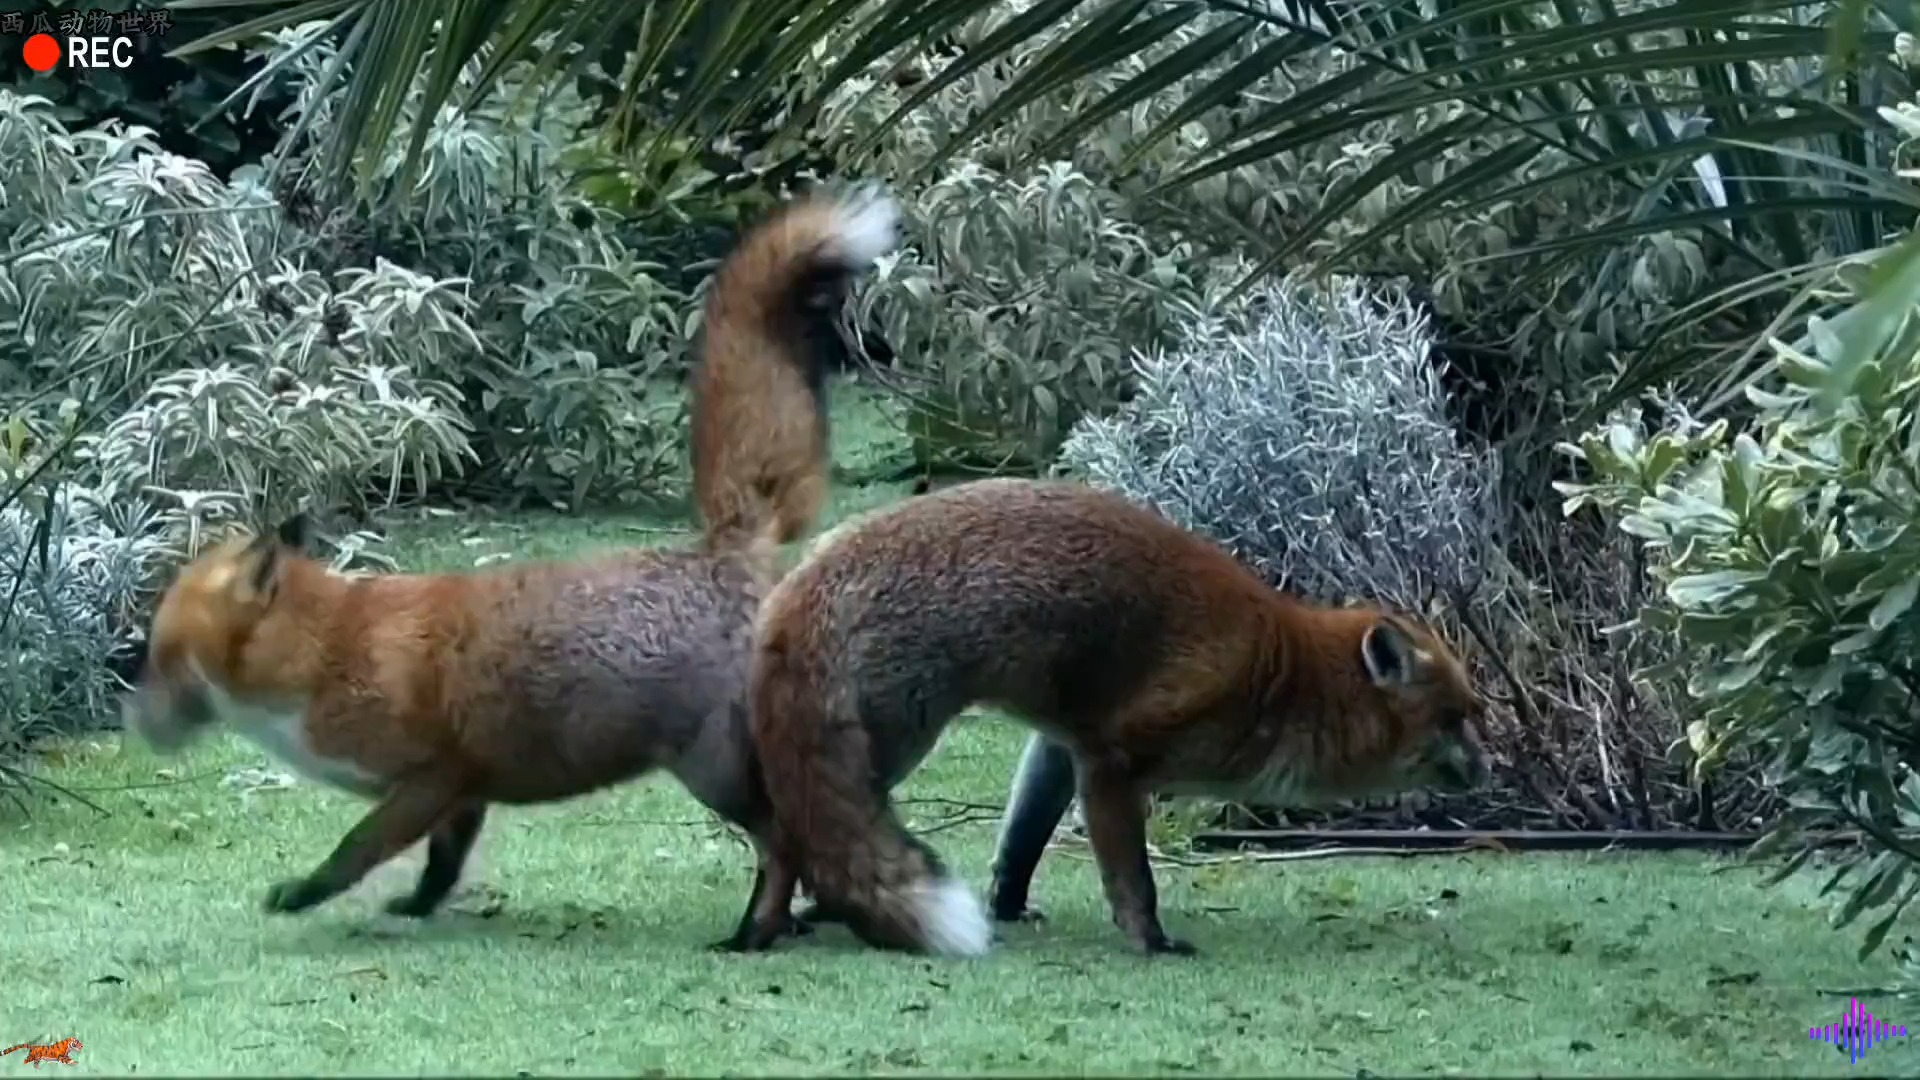 两只狐狸打架把尾巴粘在了一起，狐狸配对#神奇动物  #神评即是标题 #百万视友赐神评 